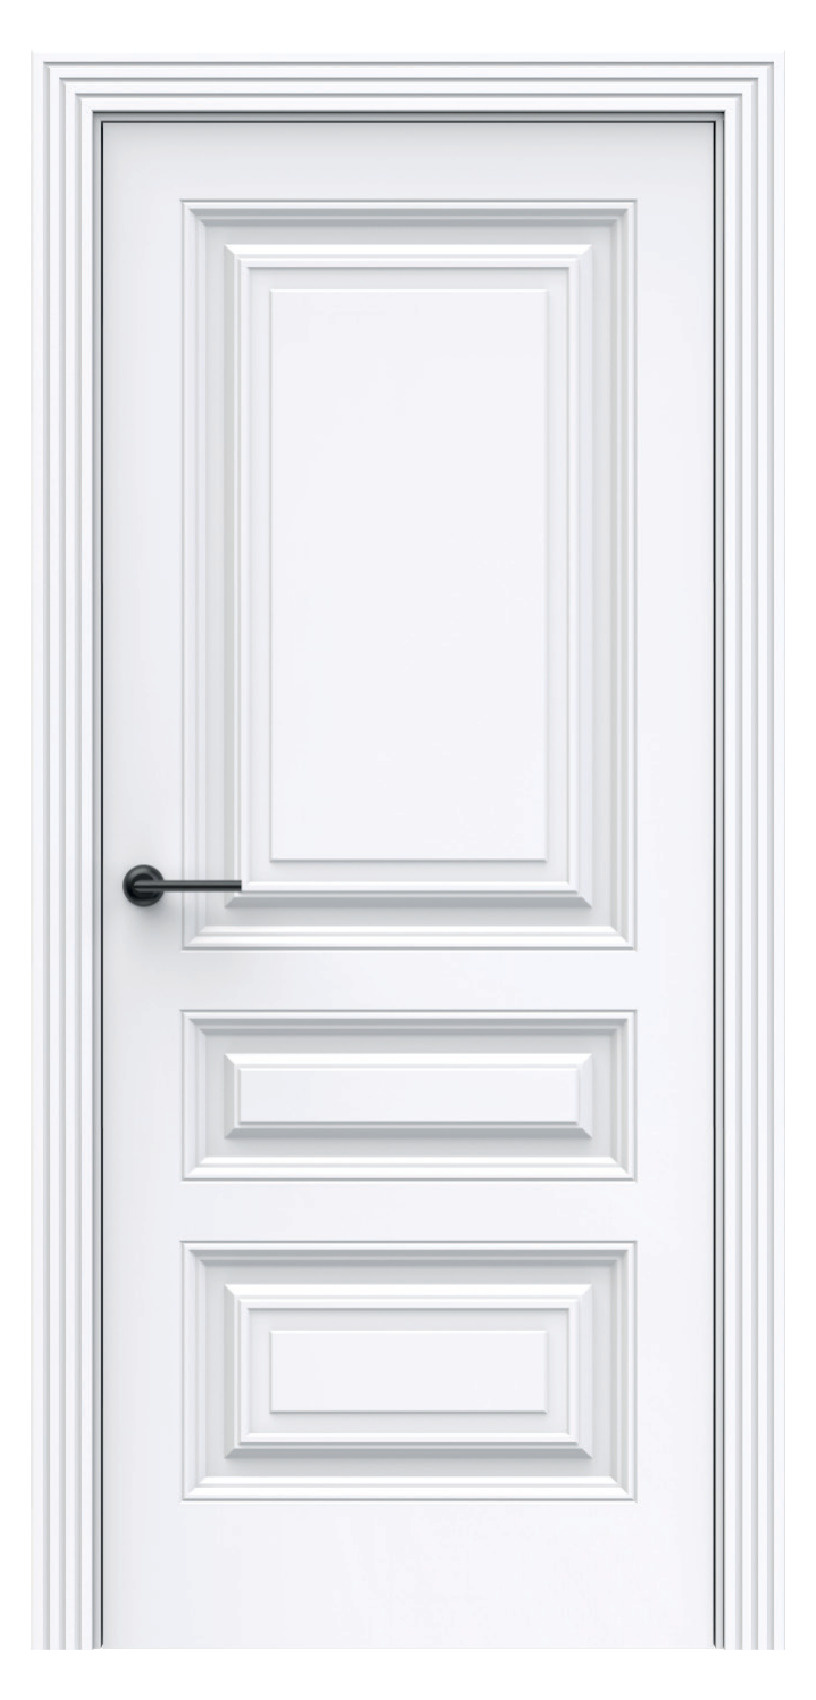 Questdoors Межкомнатная дверь QBR5, арт. 17918 - фото №1